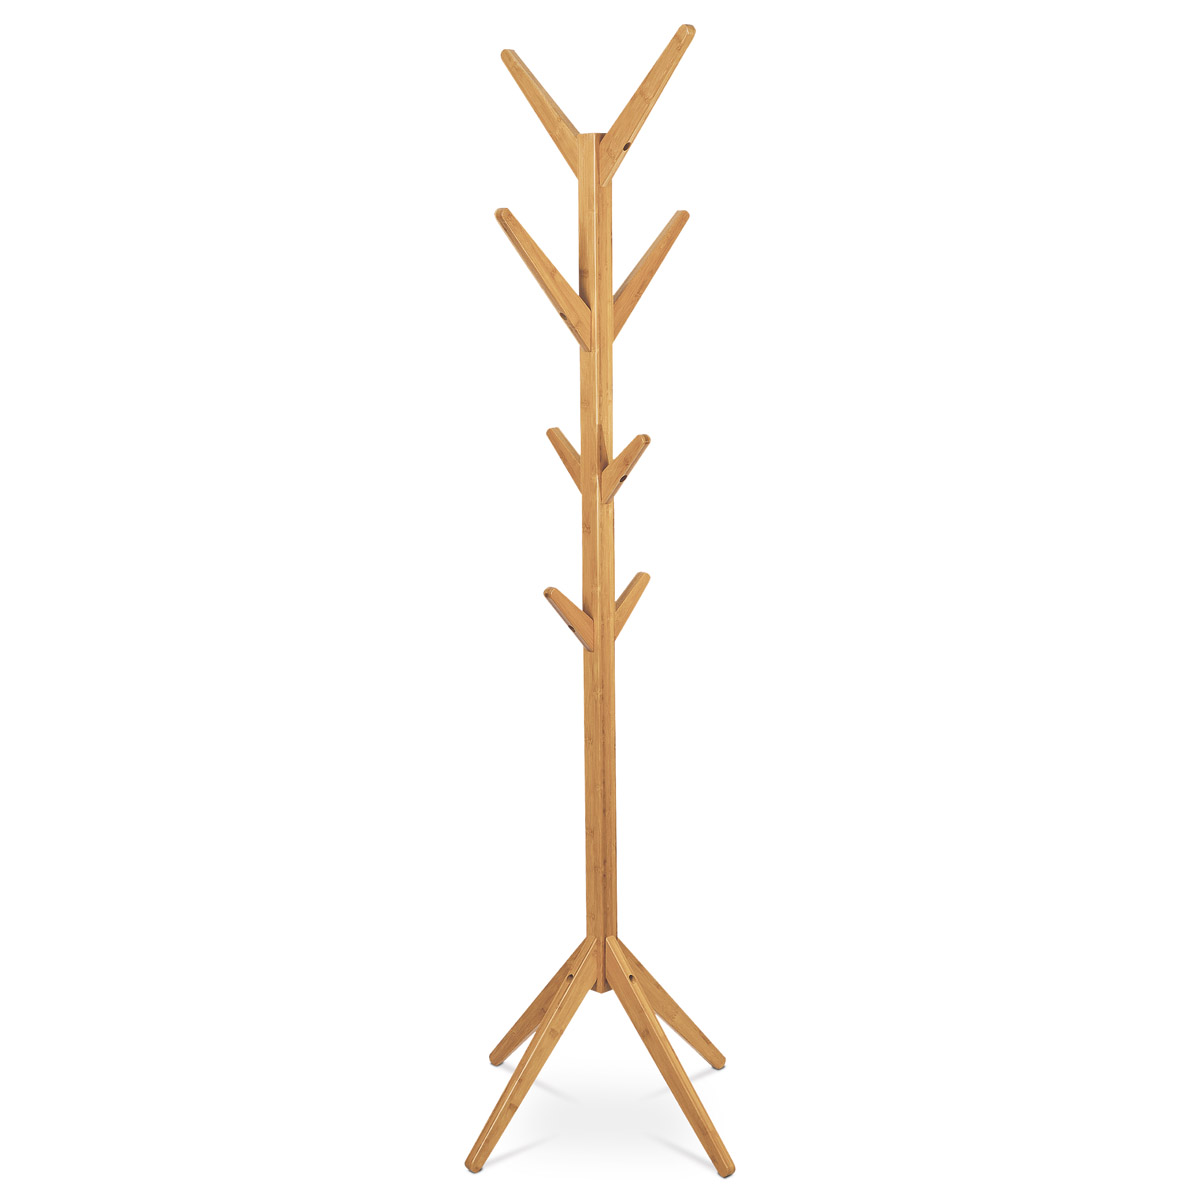 Věšák dřevěný stojanový, masiv bambus, přírodní odstín